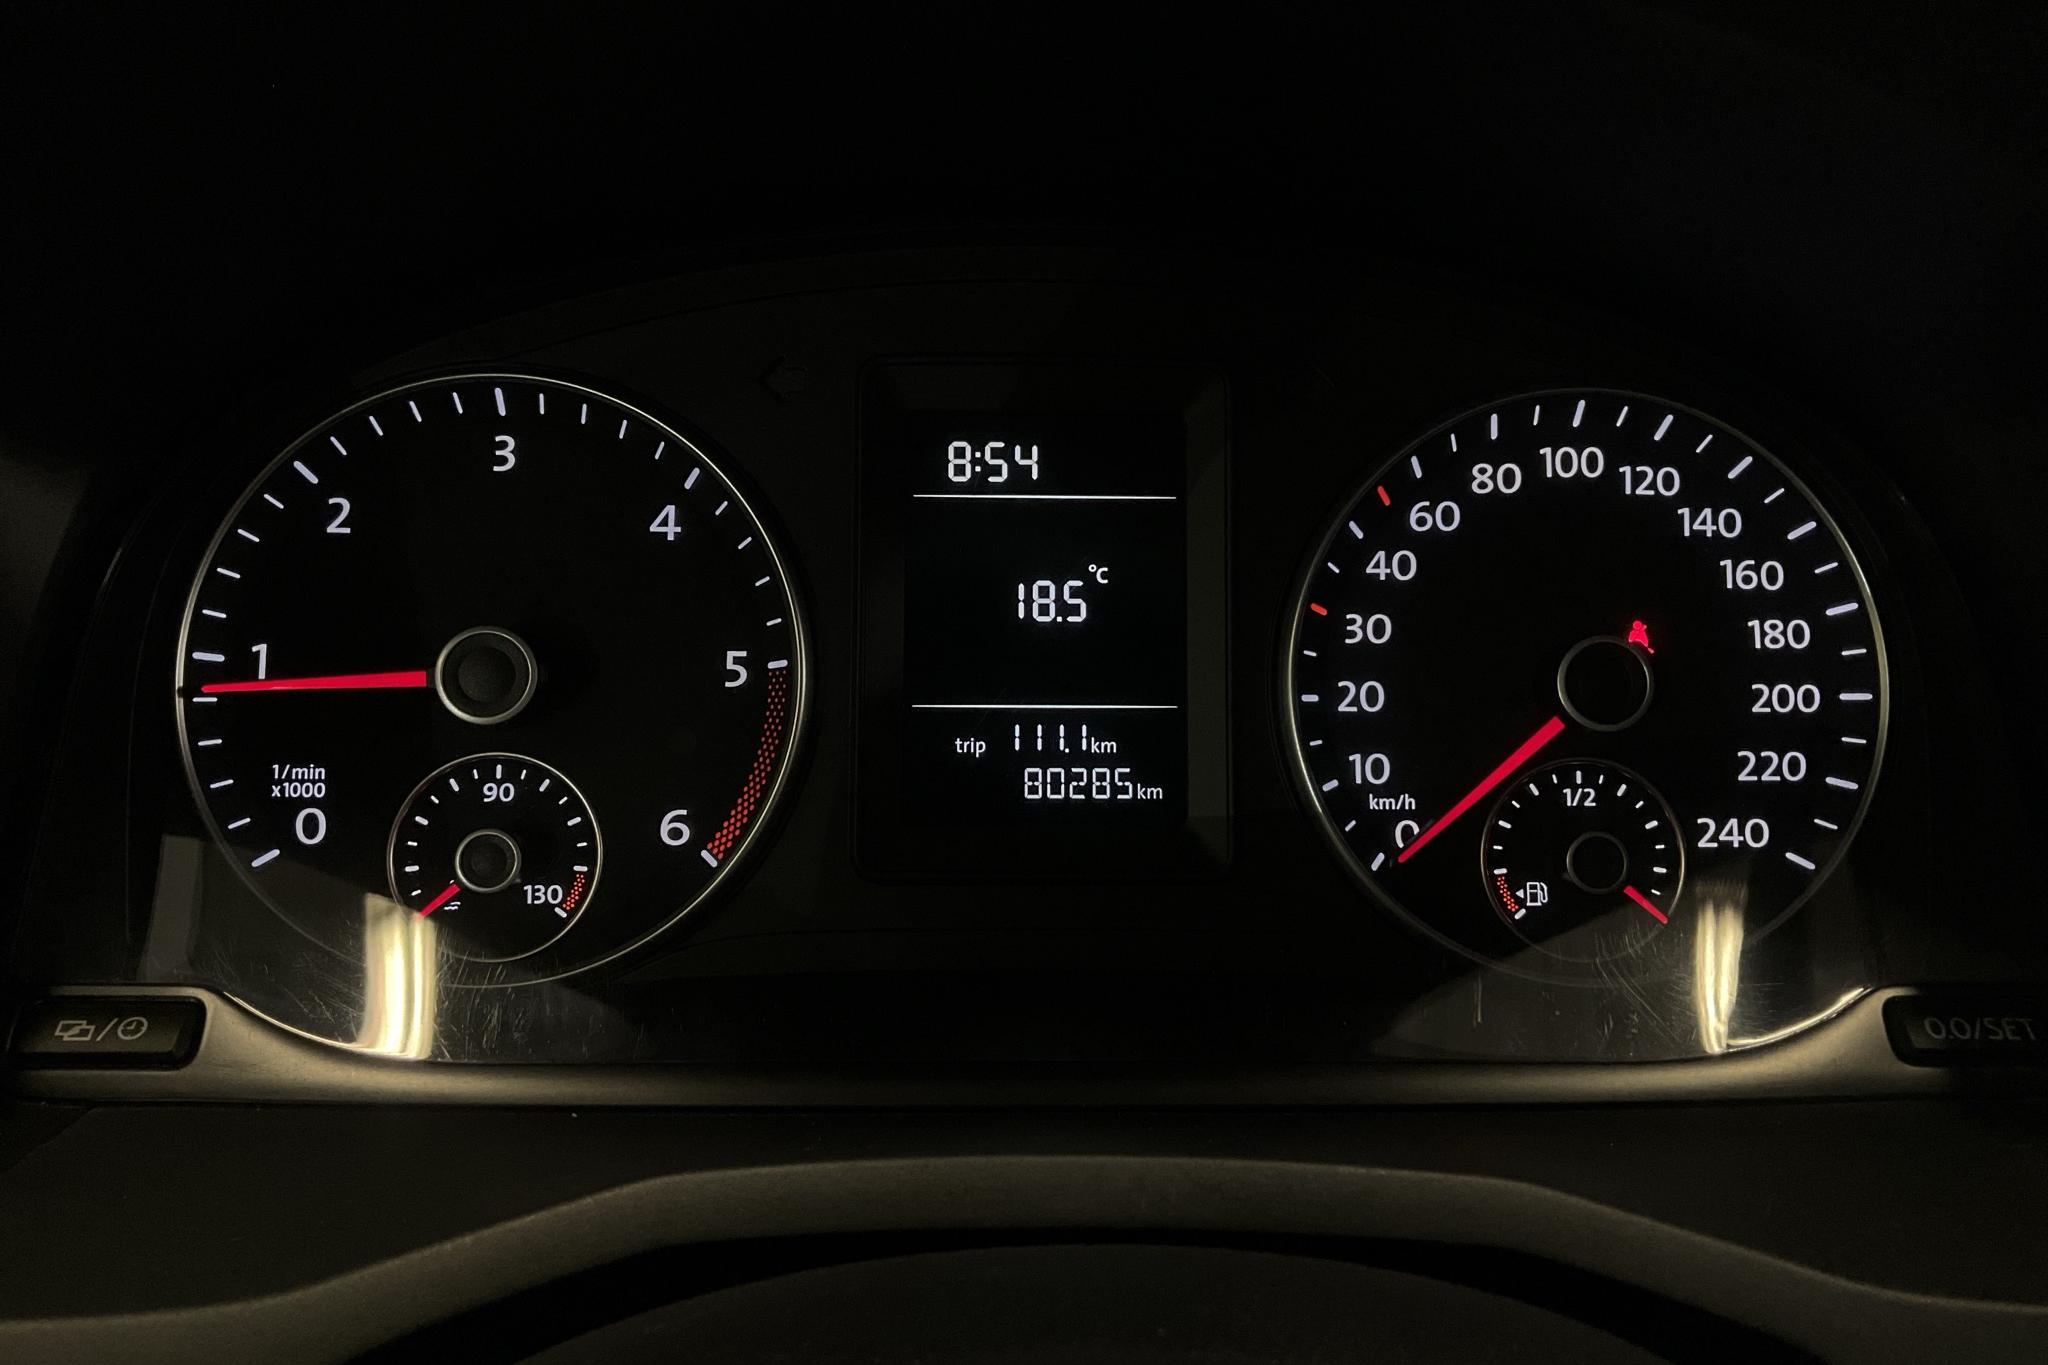 VW Caddy Life 2.0 TDI (75hk) - 80 280 km - Manual - white - 2017